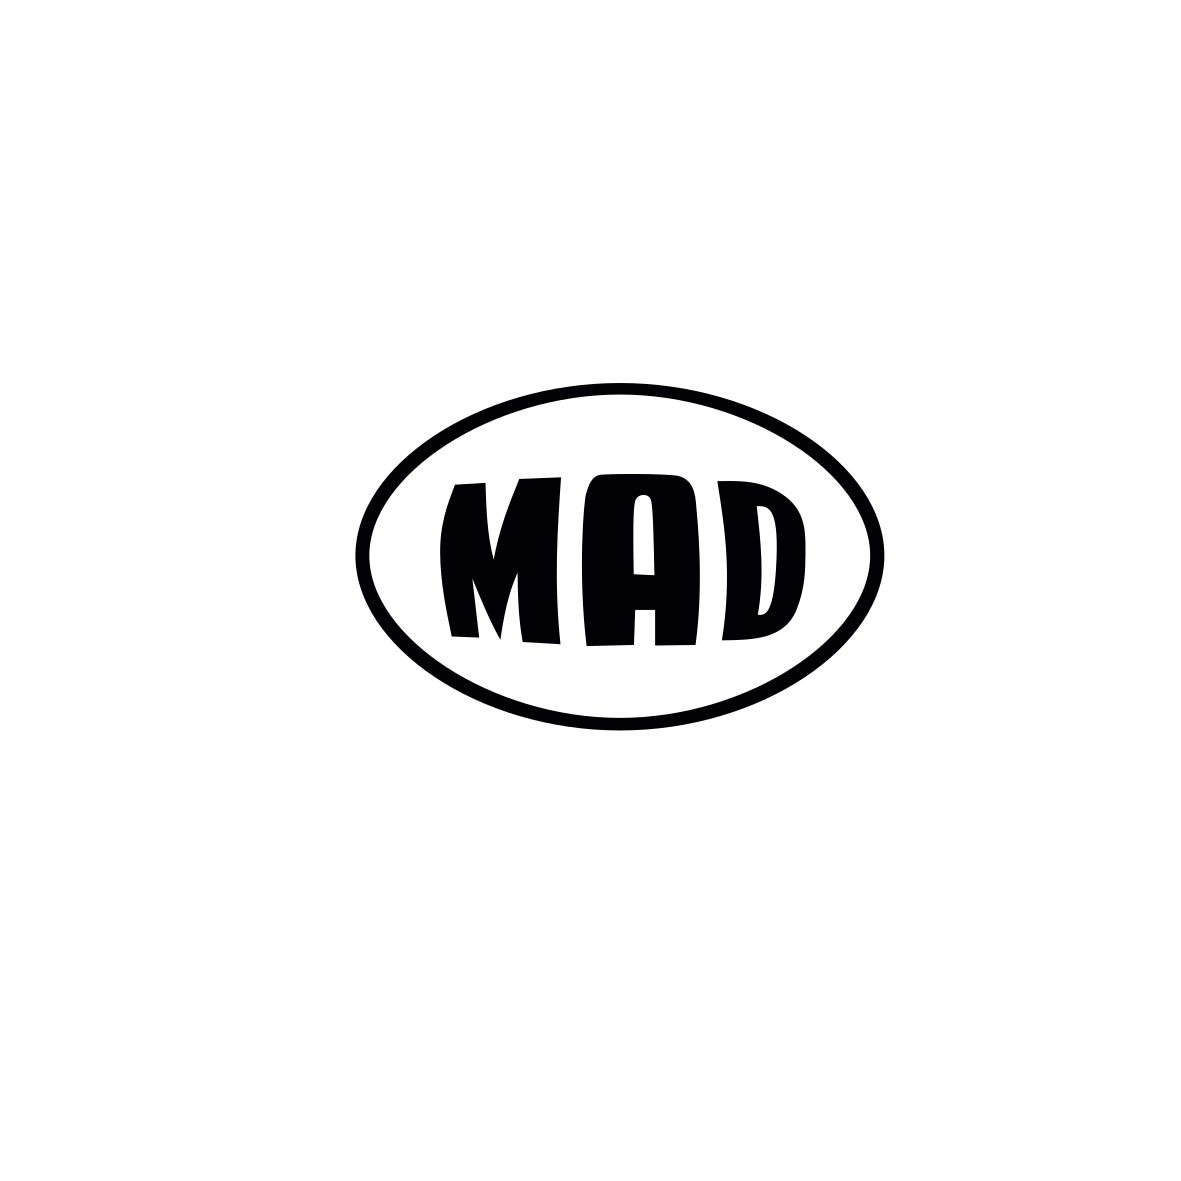 Mad_logo_white-trans-rgb